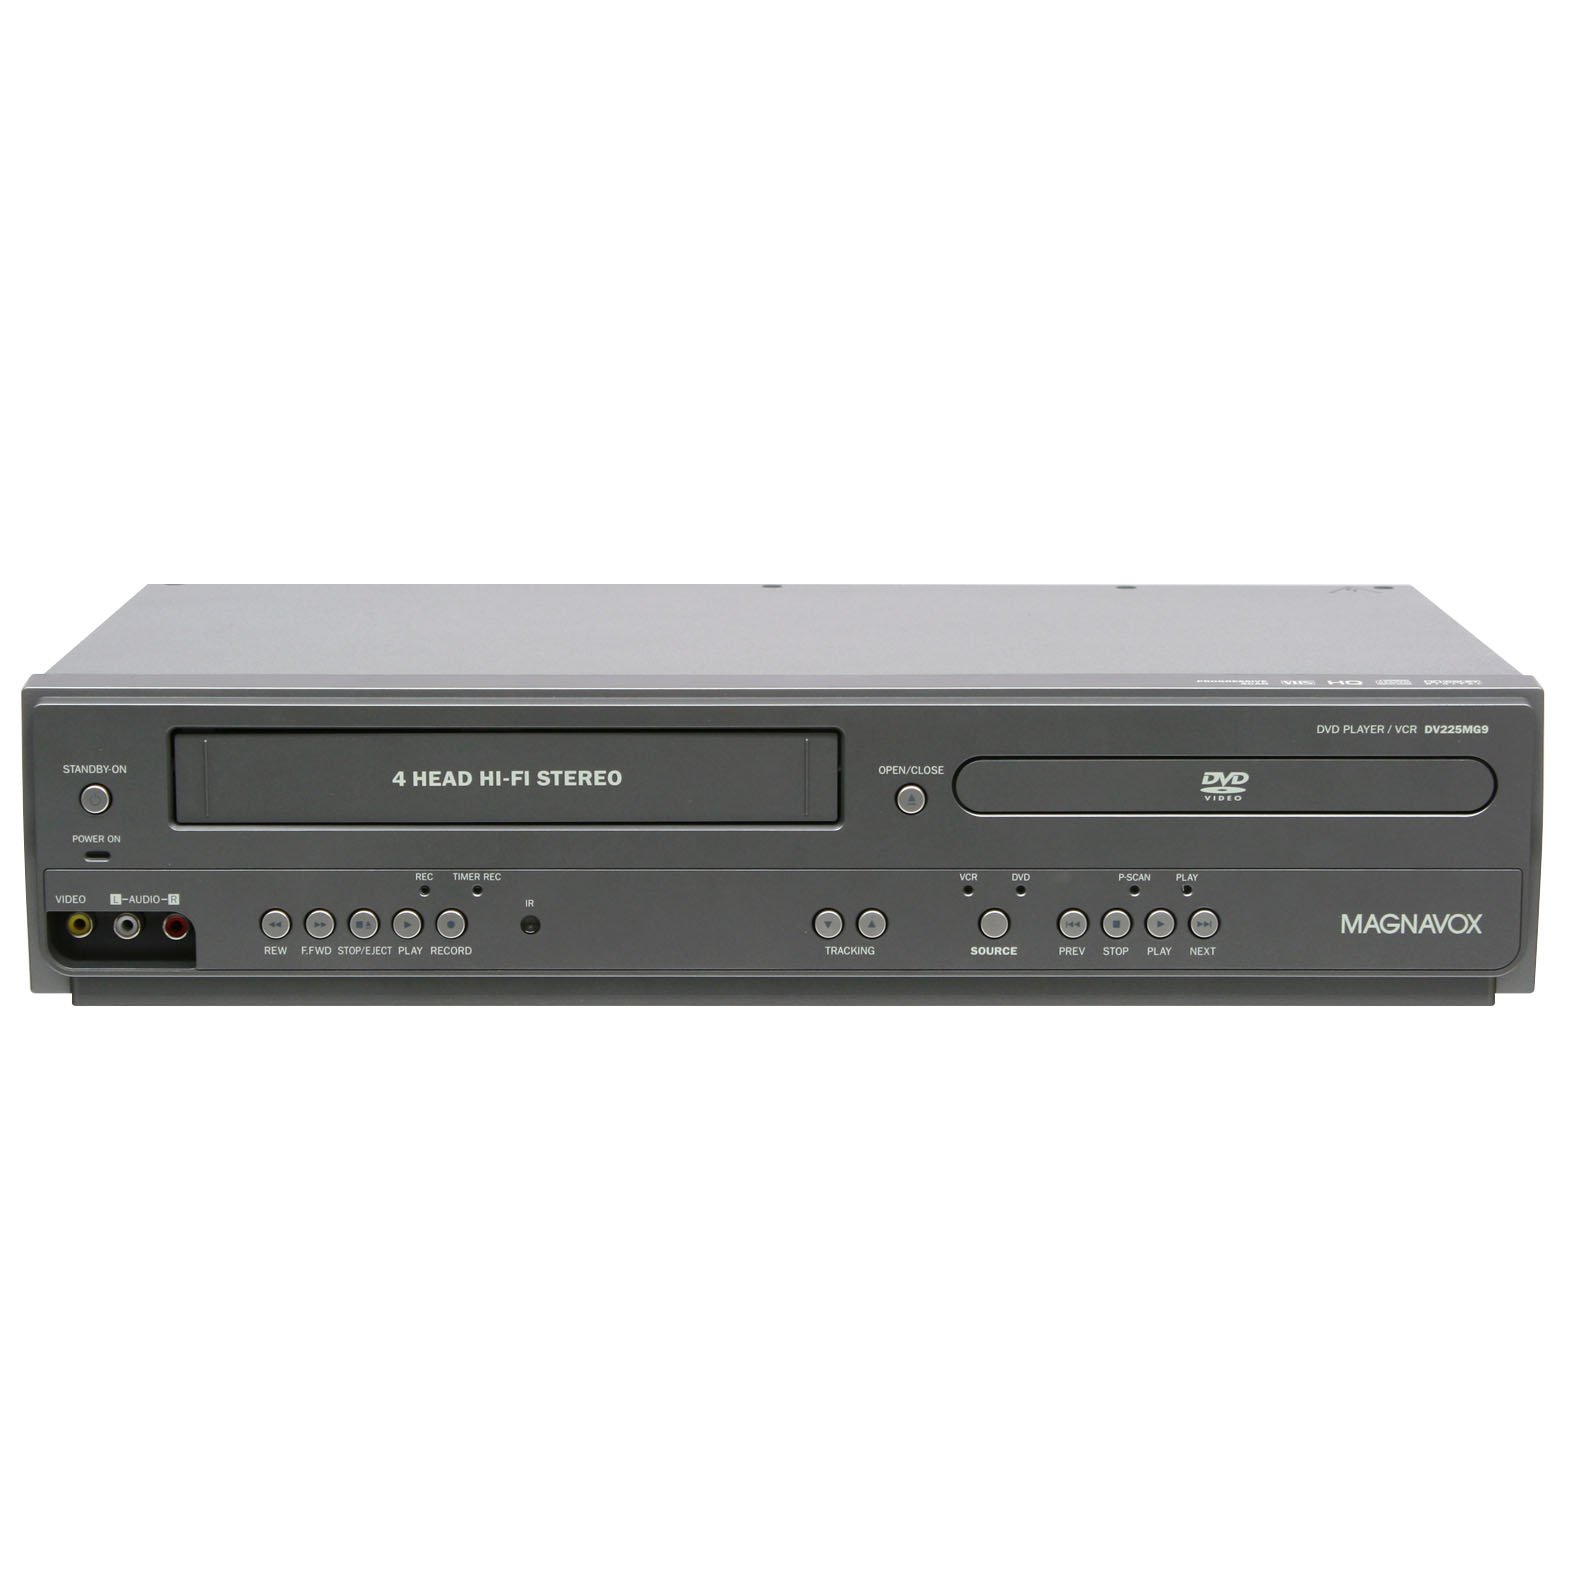 Magnavox Lecteur DVD DV225MG9 et magnétoscope stéréo Hi-Fi à 4 têtes avec enregistrement en ligne